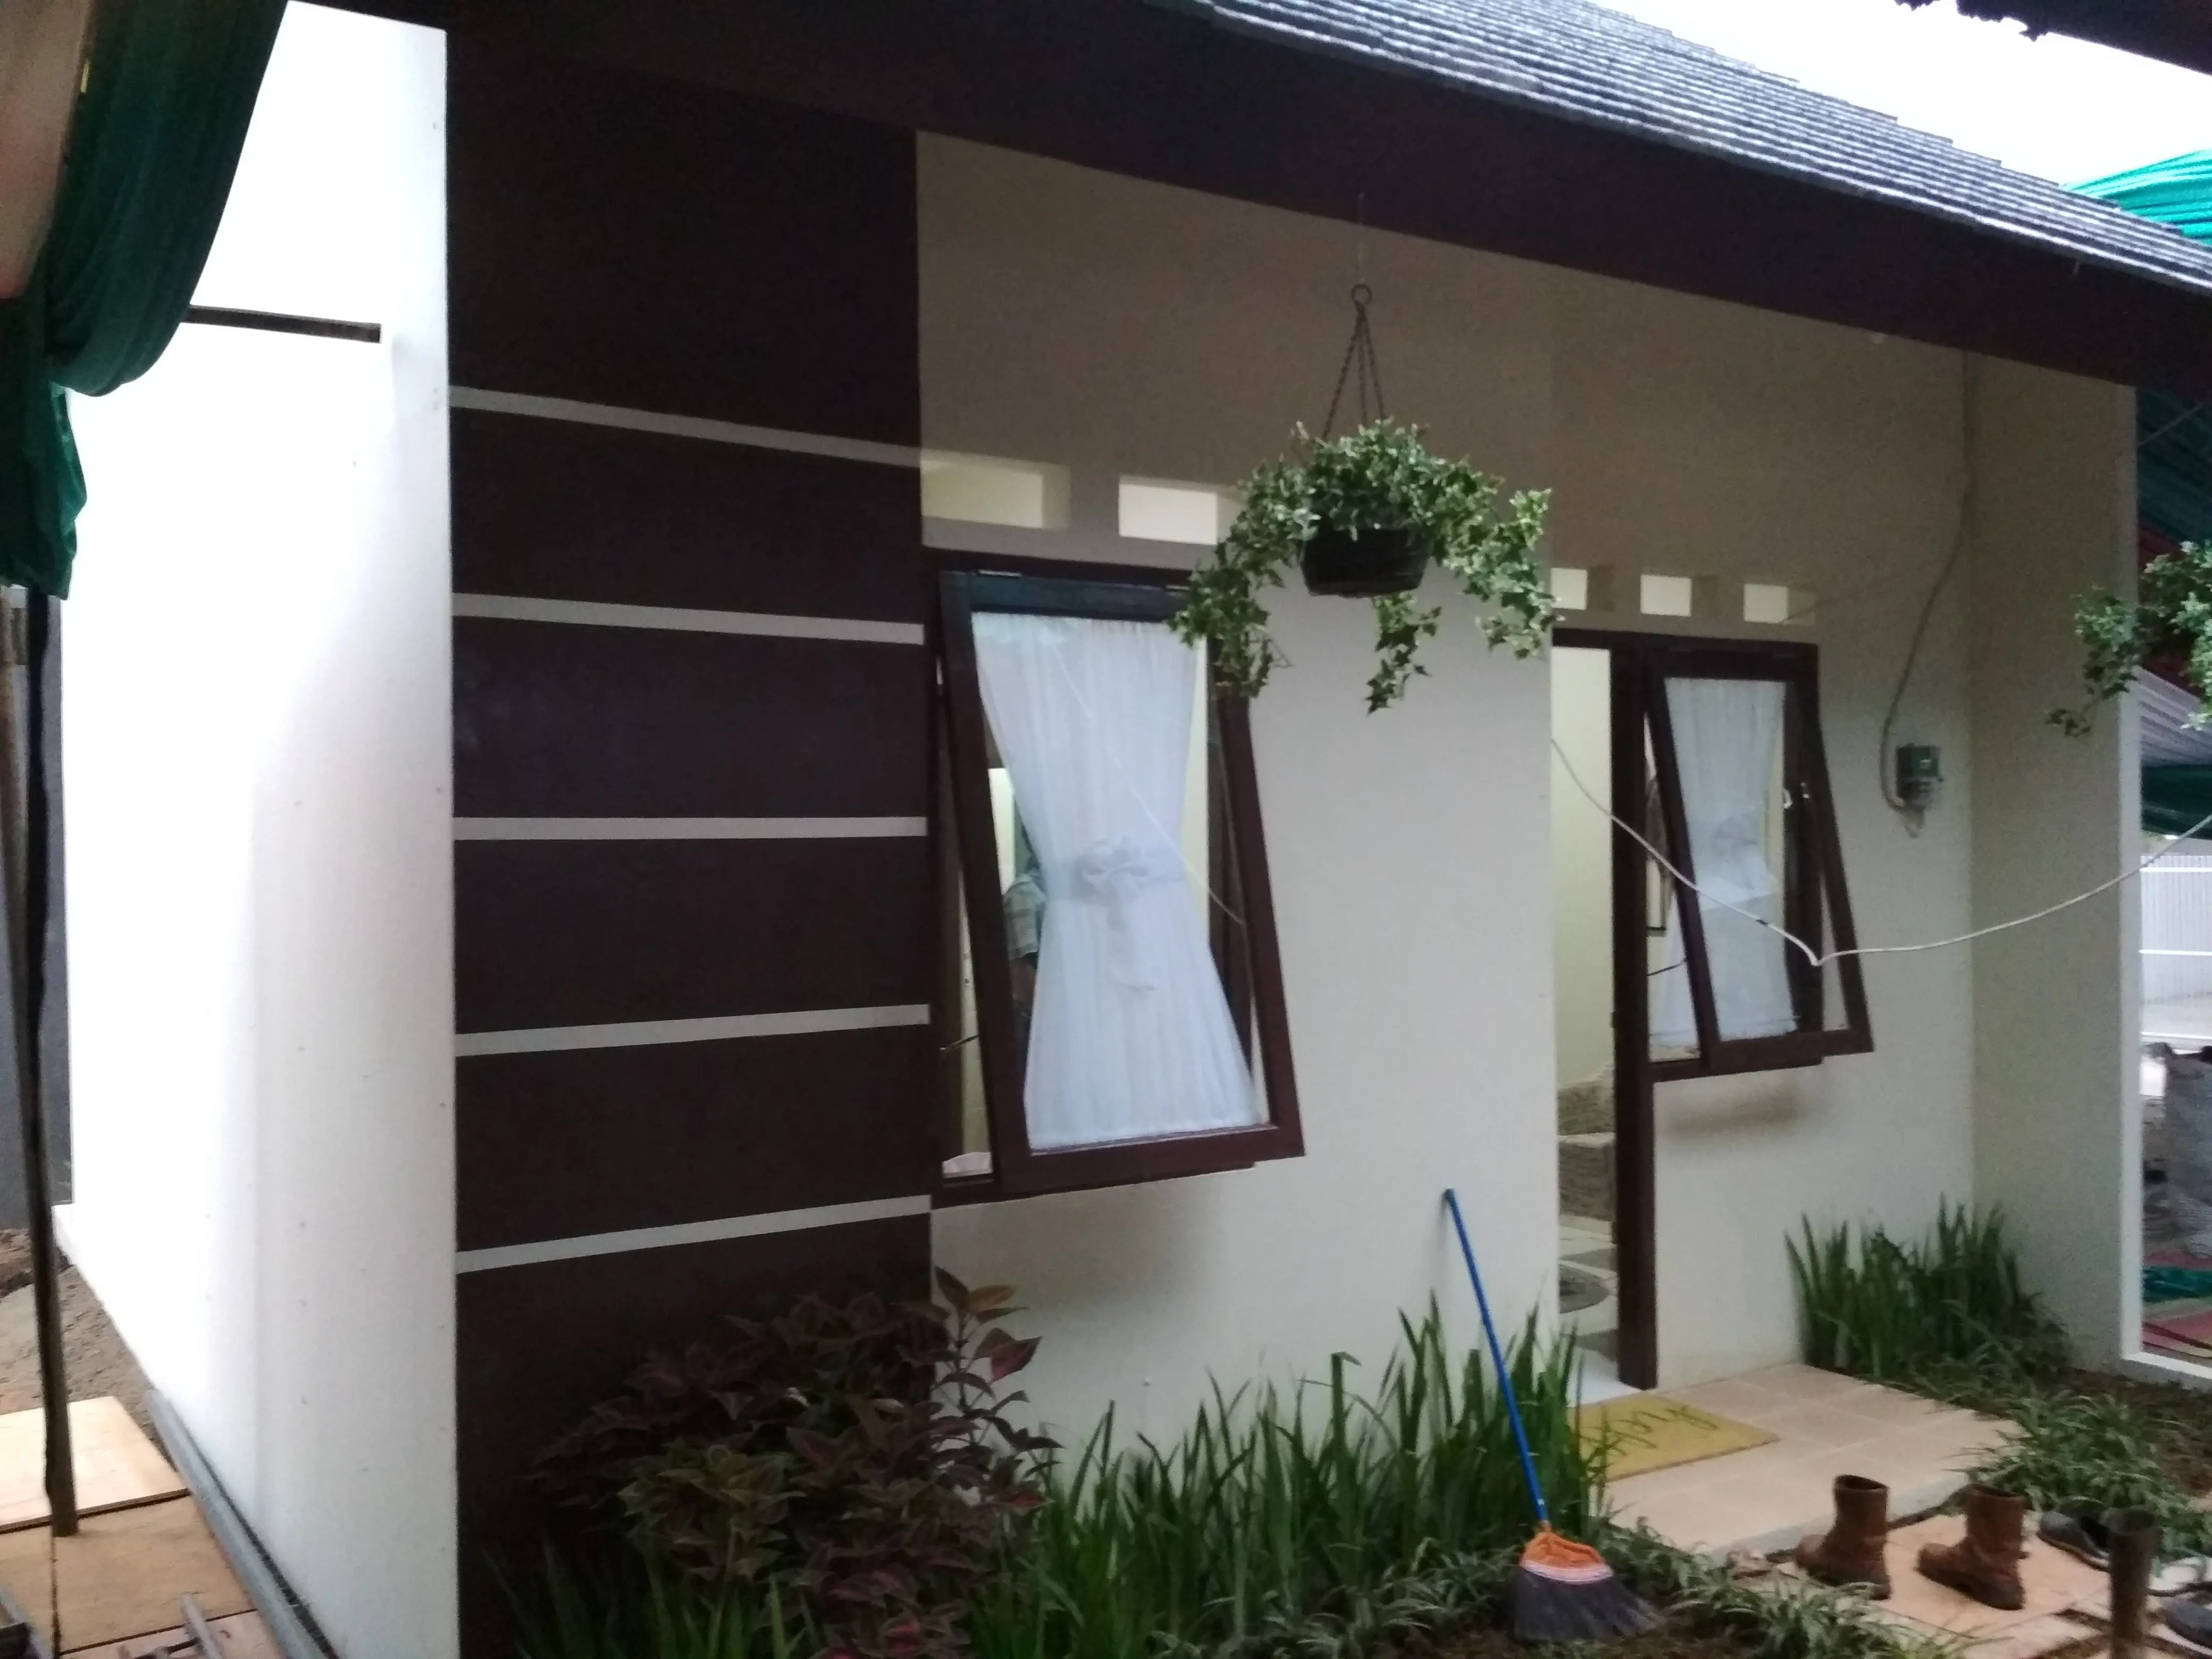 Rumah tapak dengan DP 0 rupiah di Rorotan, Jakarta Utara. (Liputan6.com/Moch Harun Syah)